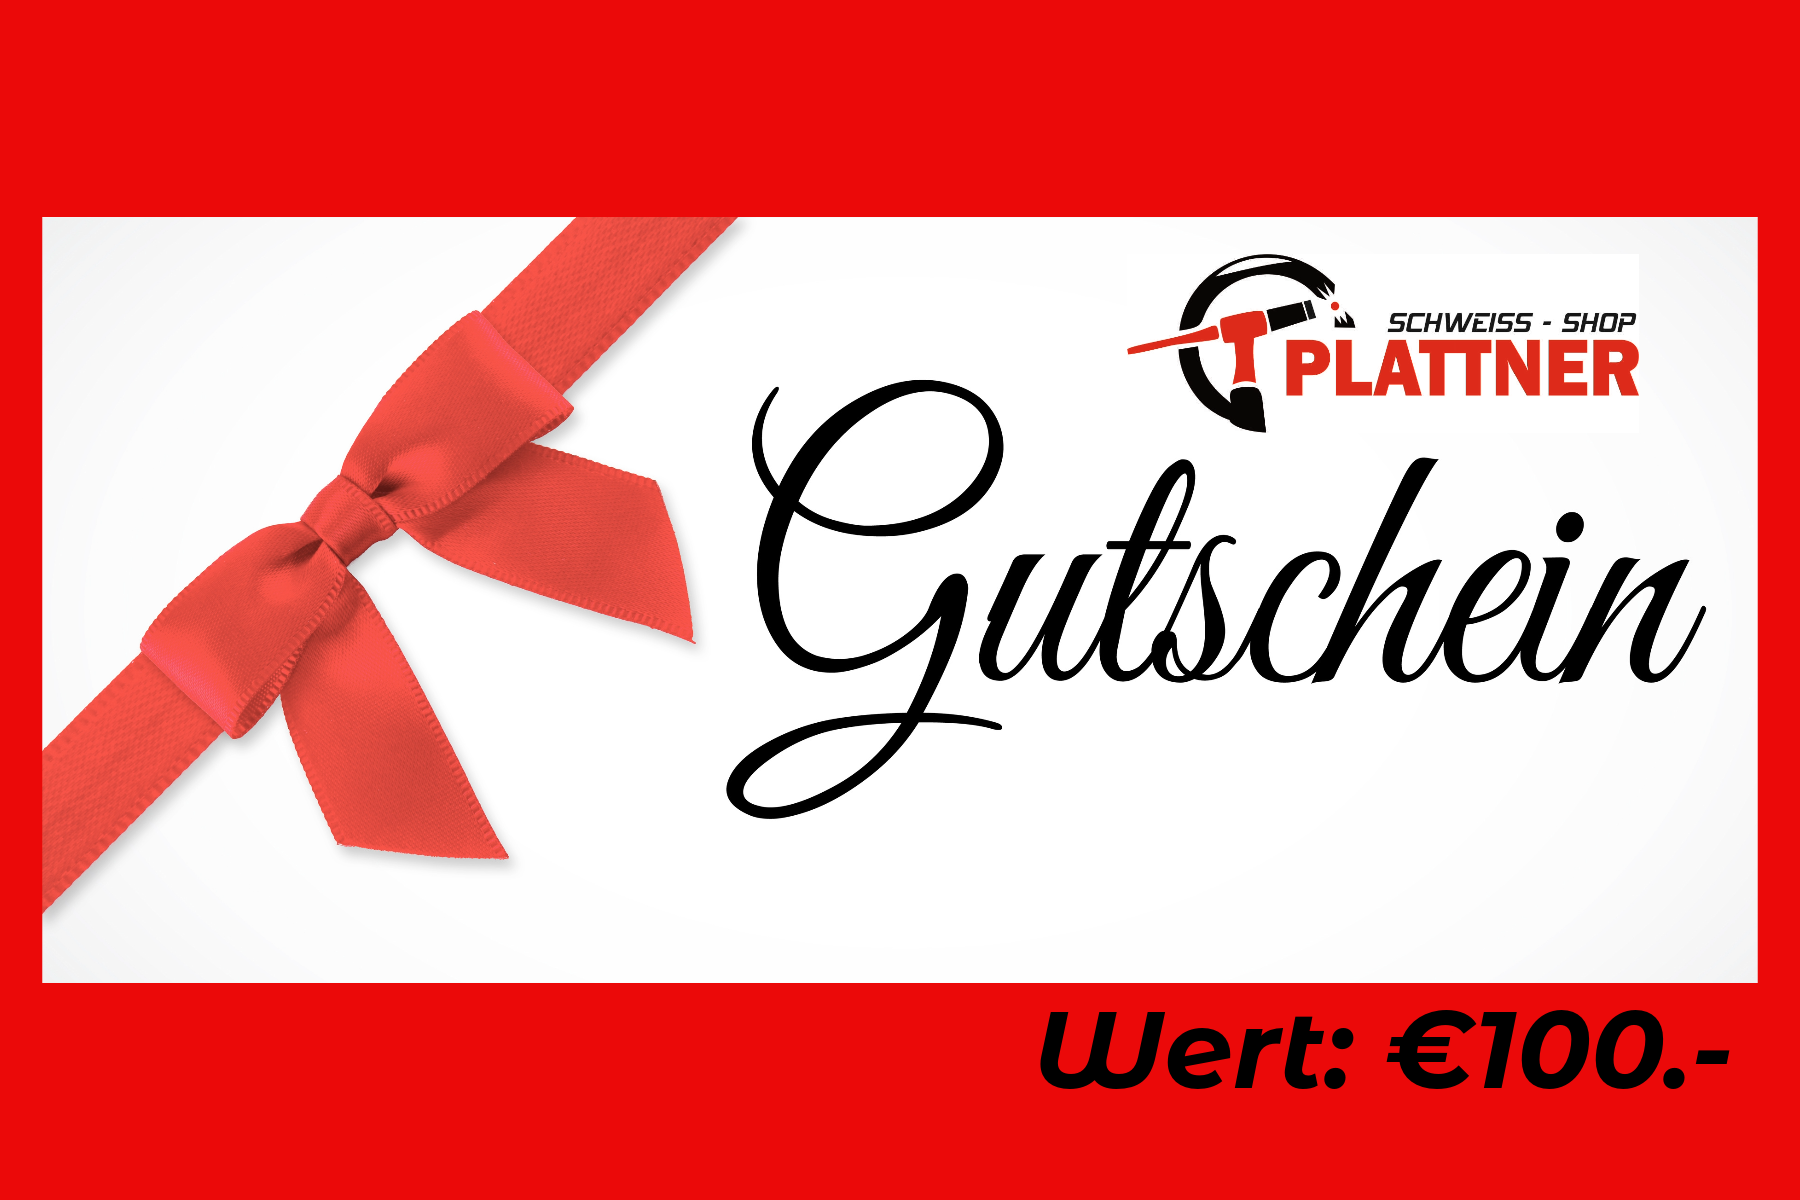 Plattners Schweiss Shop Geschenkgutschein